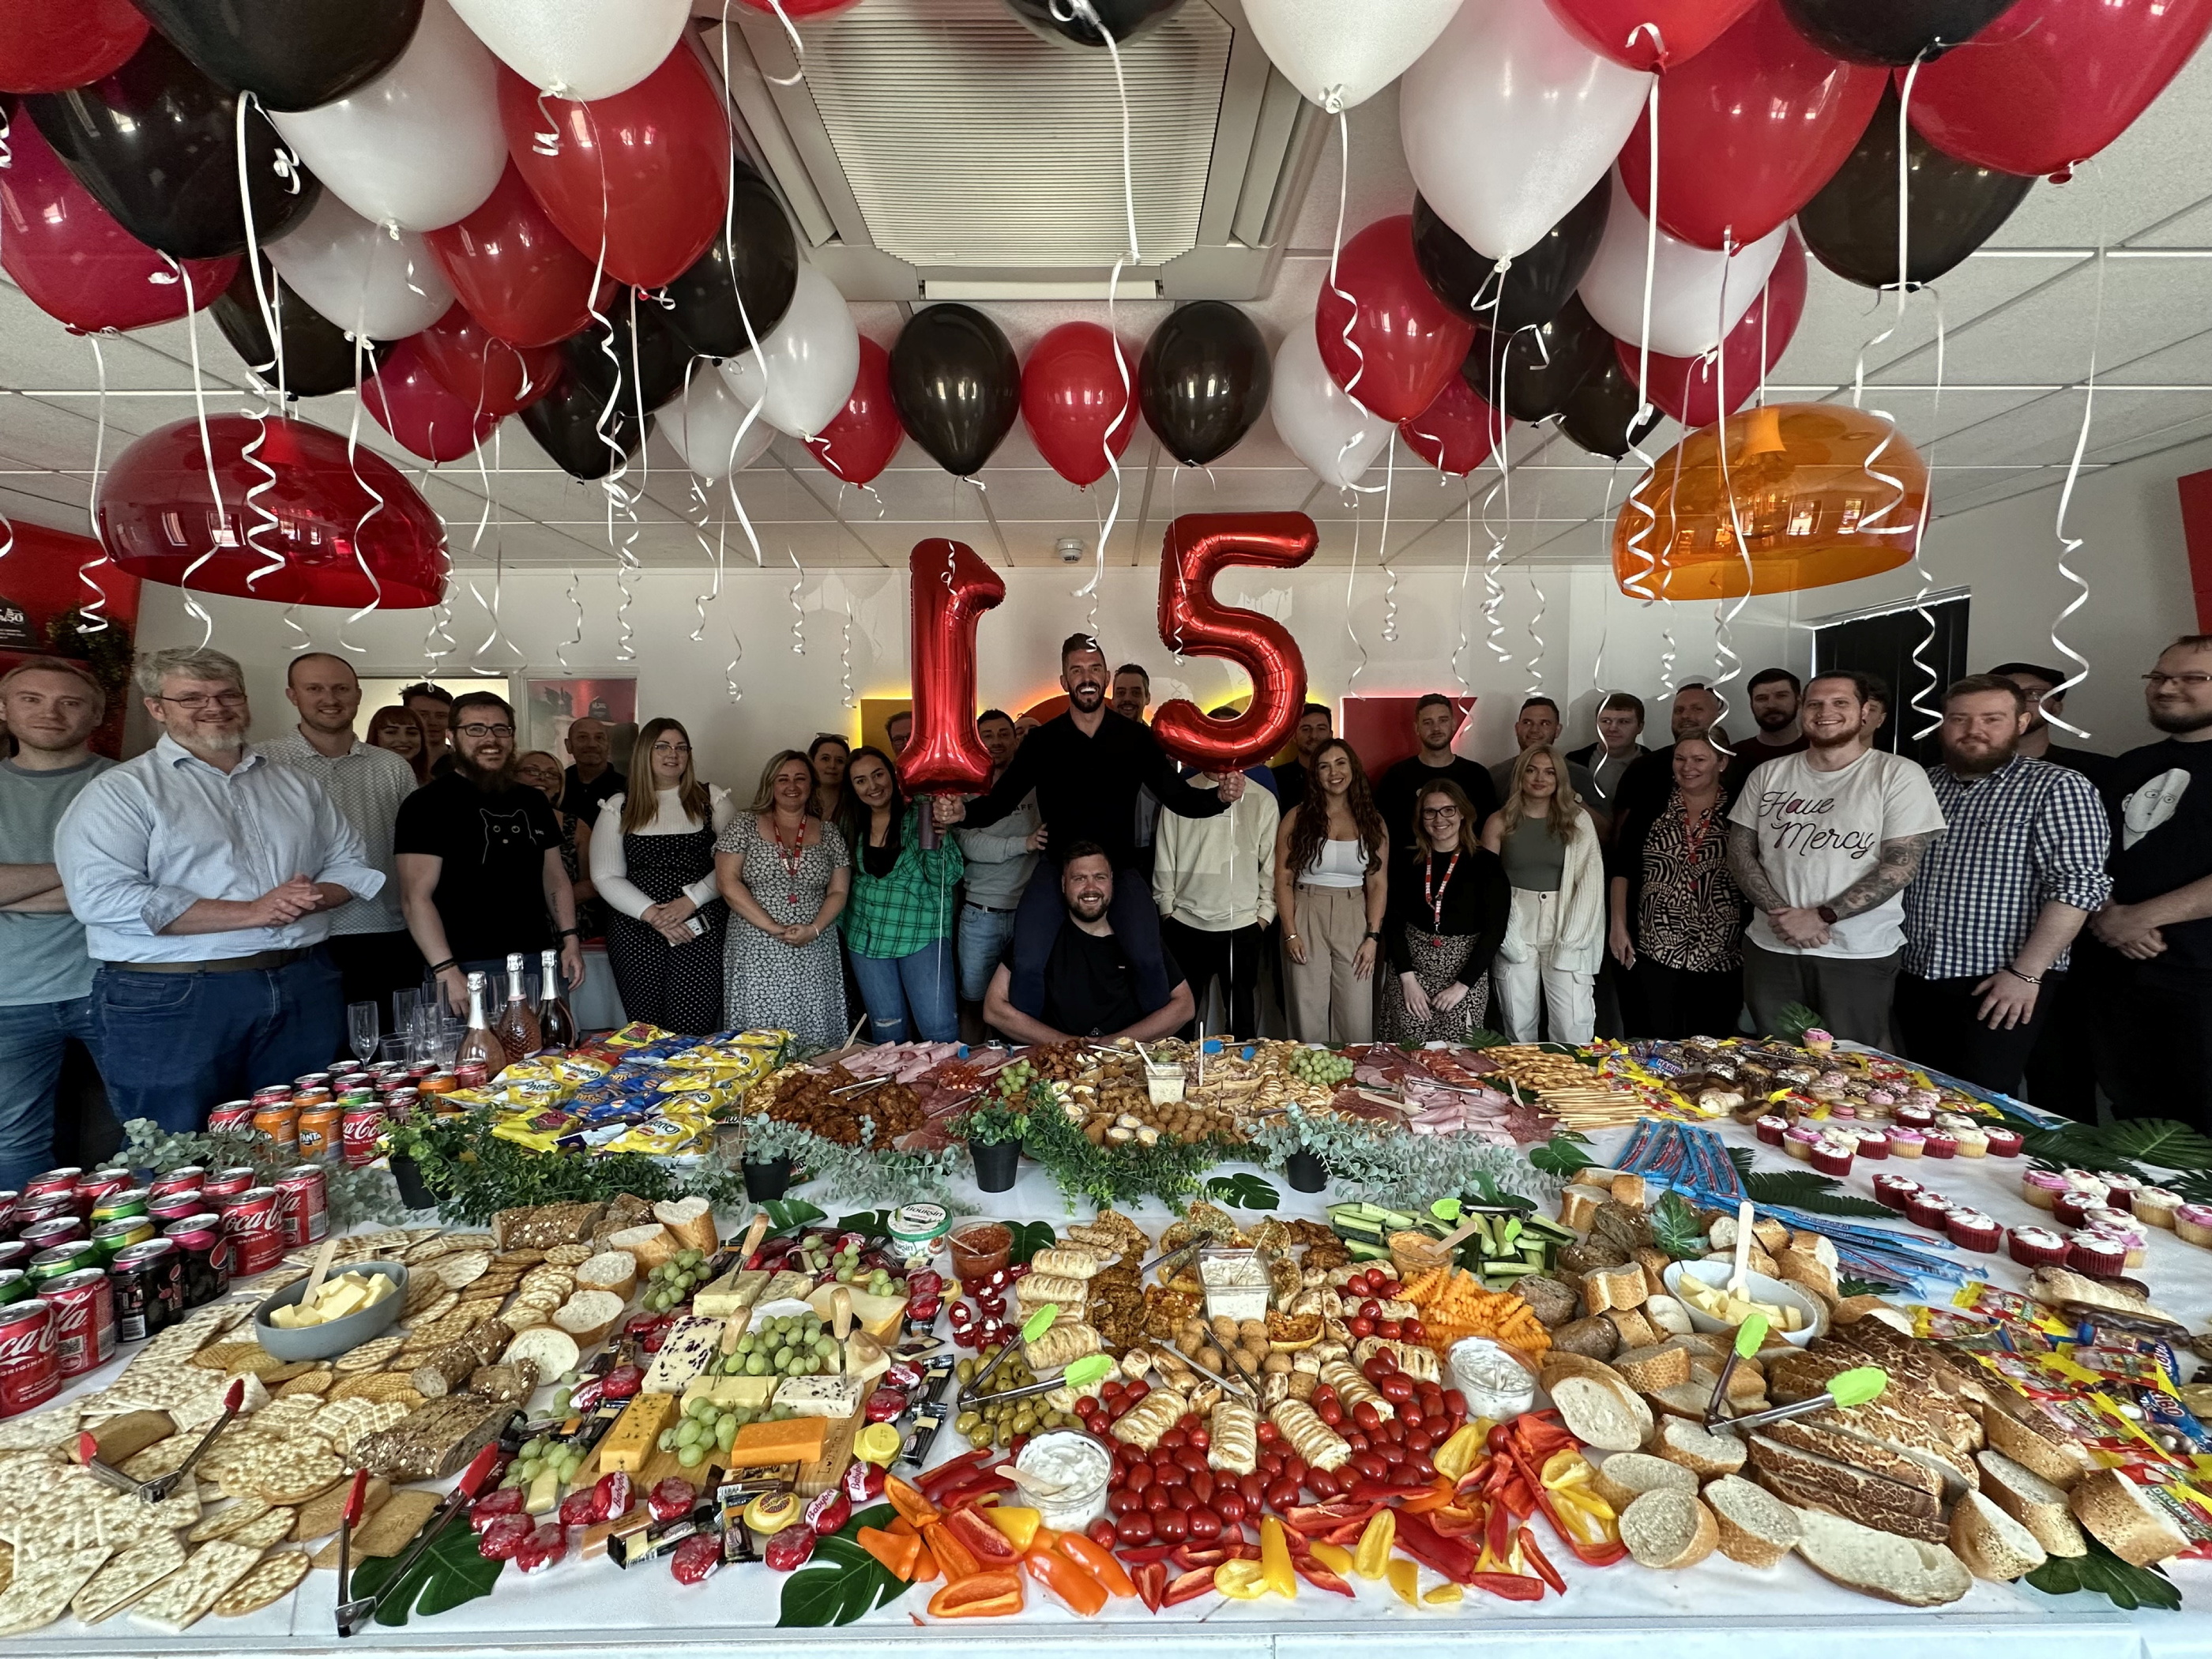 Das Unternehmen mit mittlerweile über 100 Mitarbeitern feierte kürzlich sein 15-jähriges Bestehen